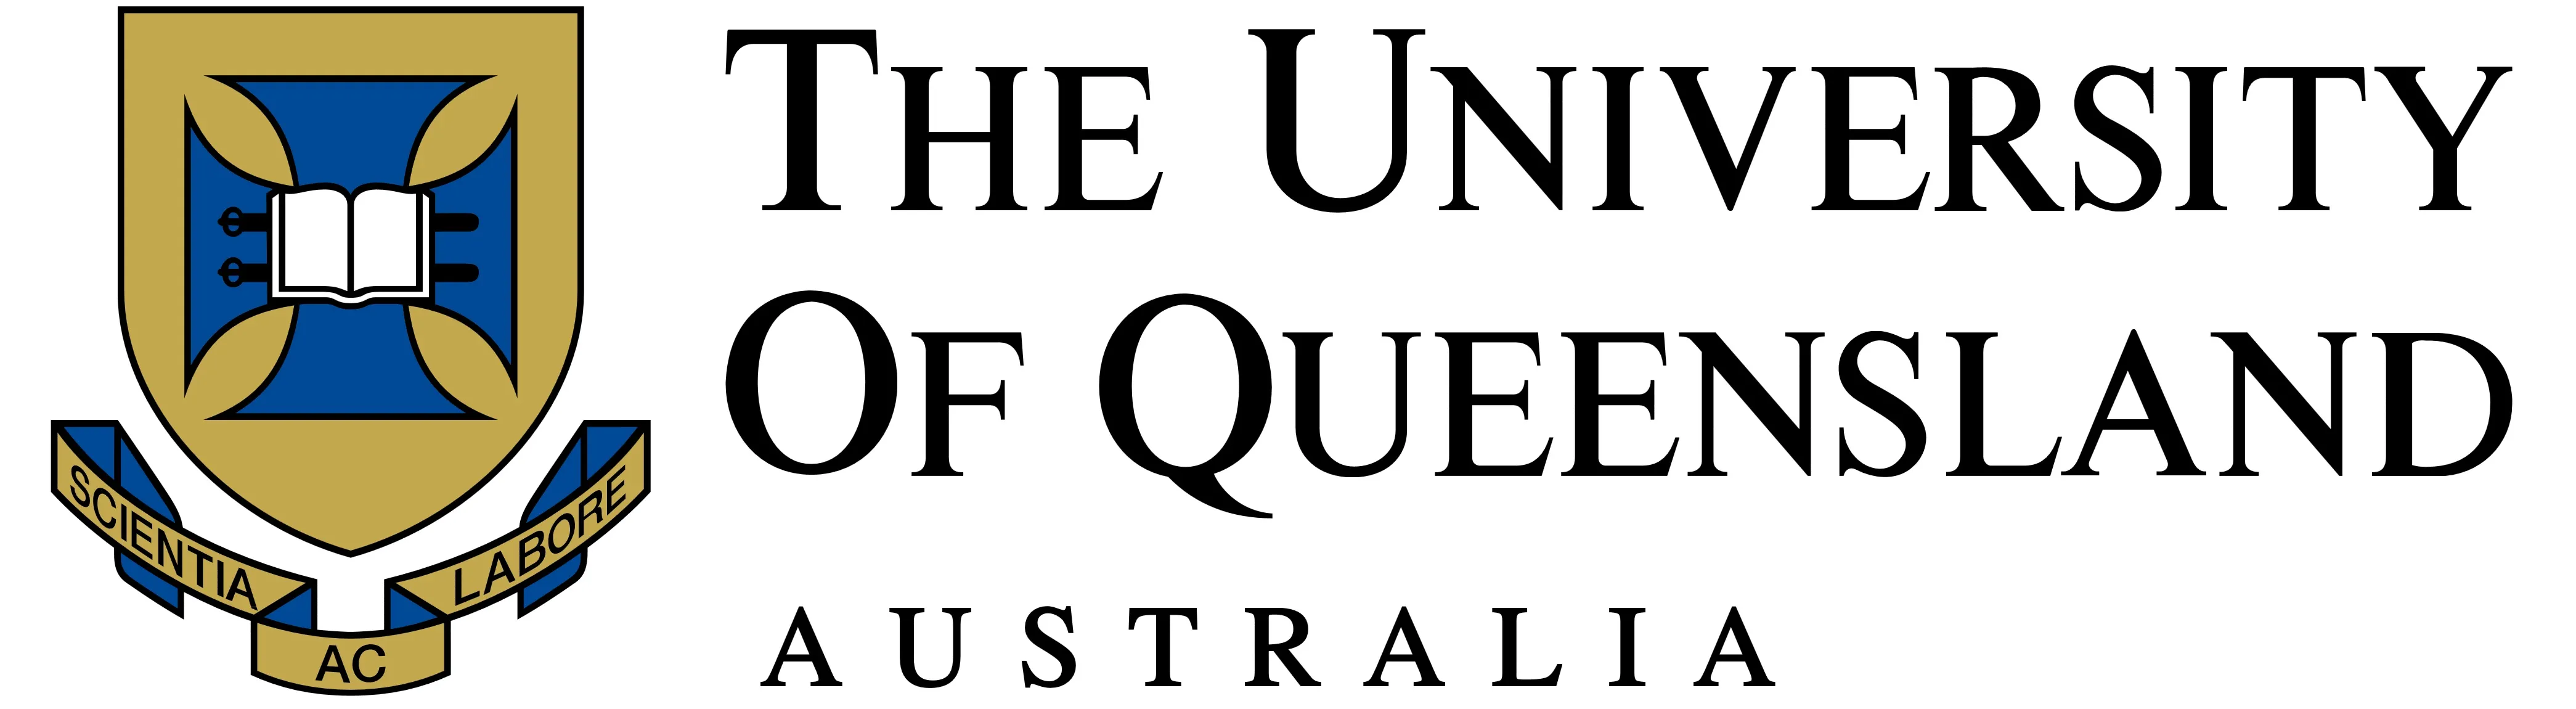 the-university-of-queensland